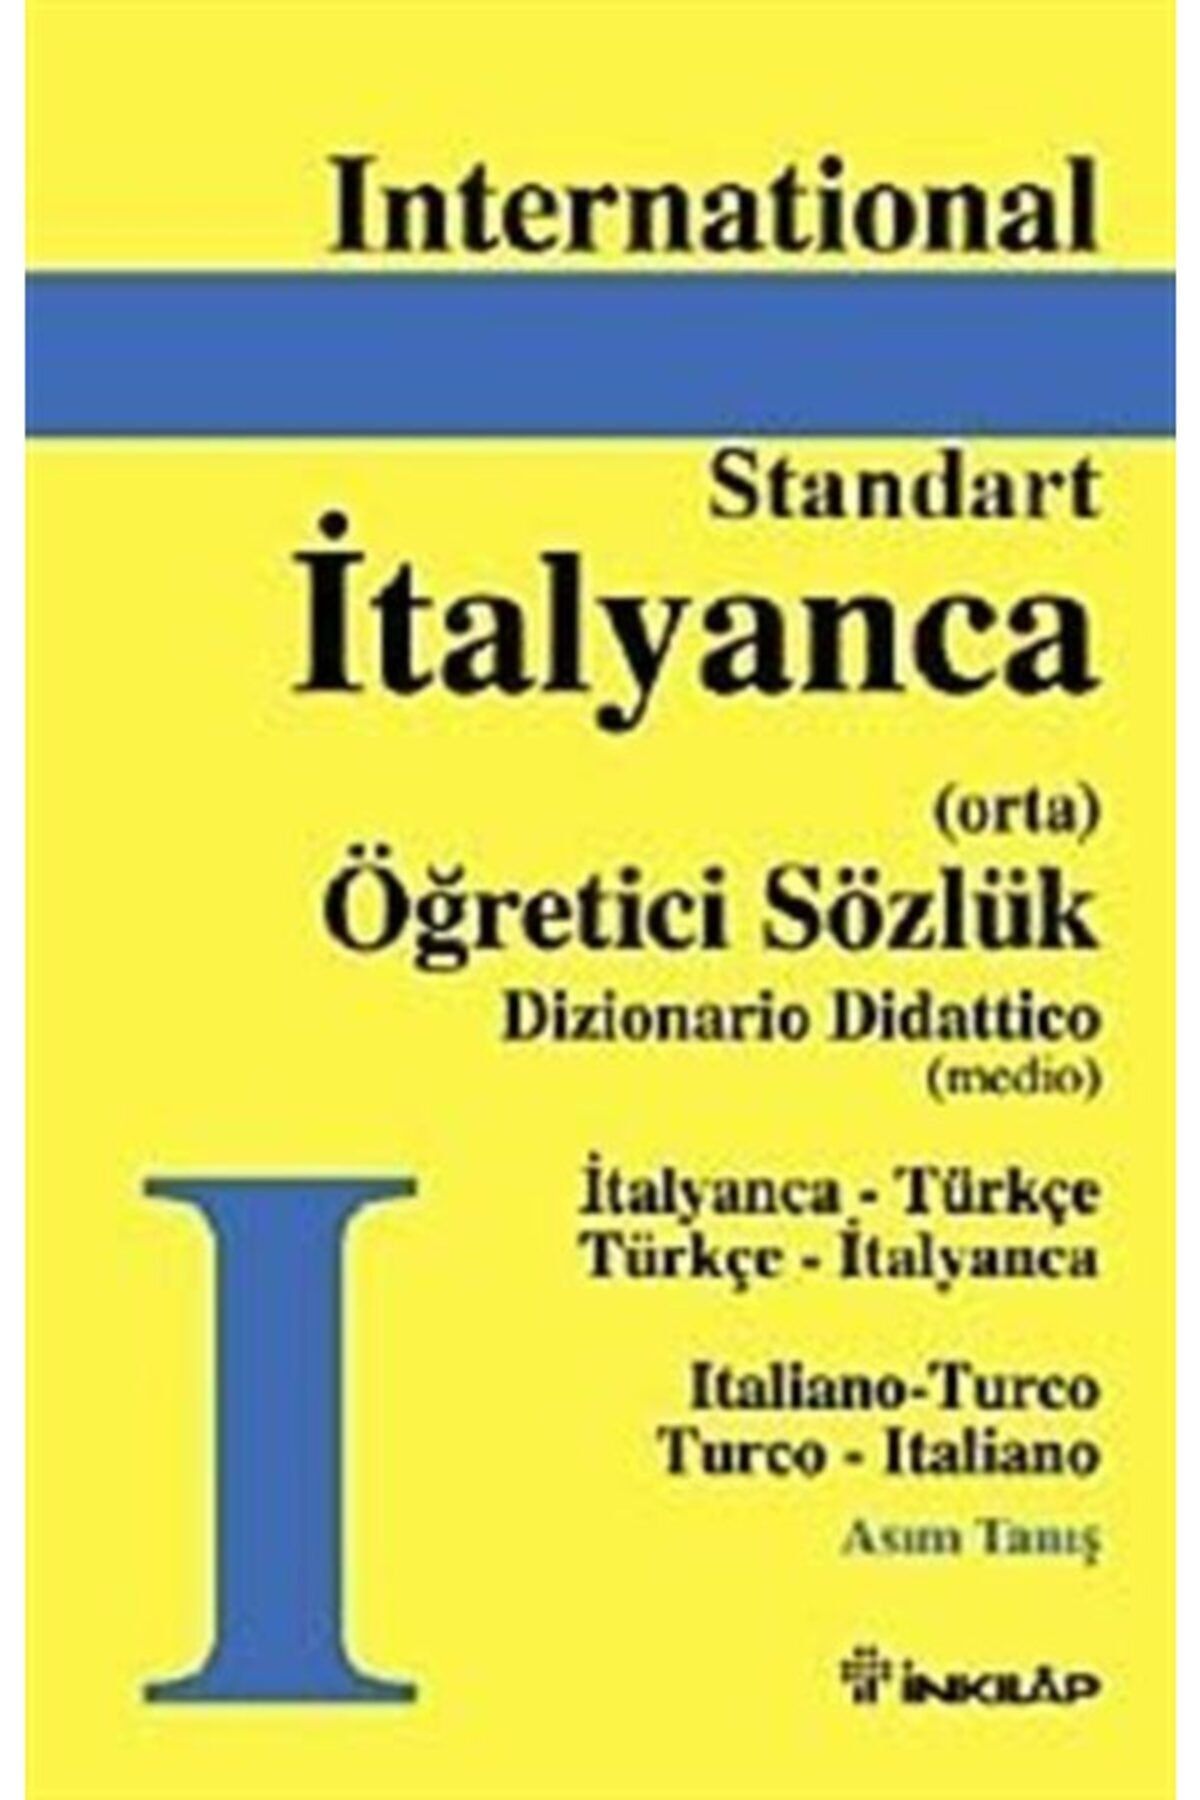 İnkılap Kitabevi International Standart İtalyanca Öğretici Sözlük ve İtalyanca Türkçe Türkçe İtalyanca